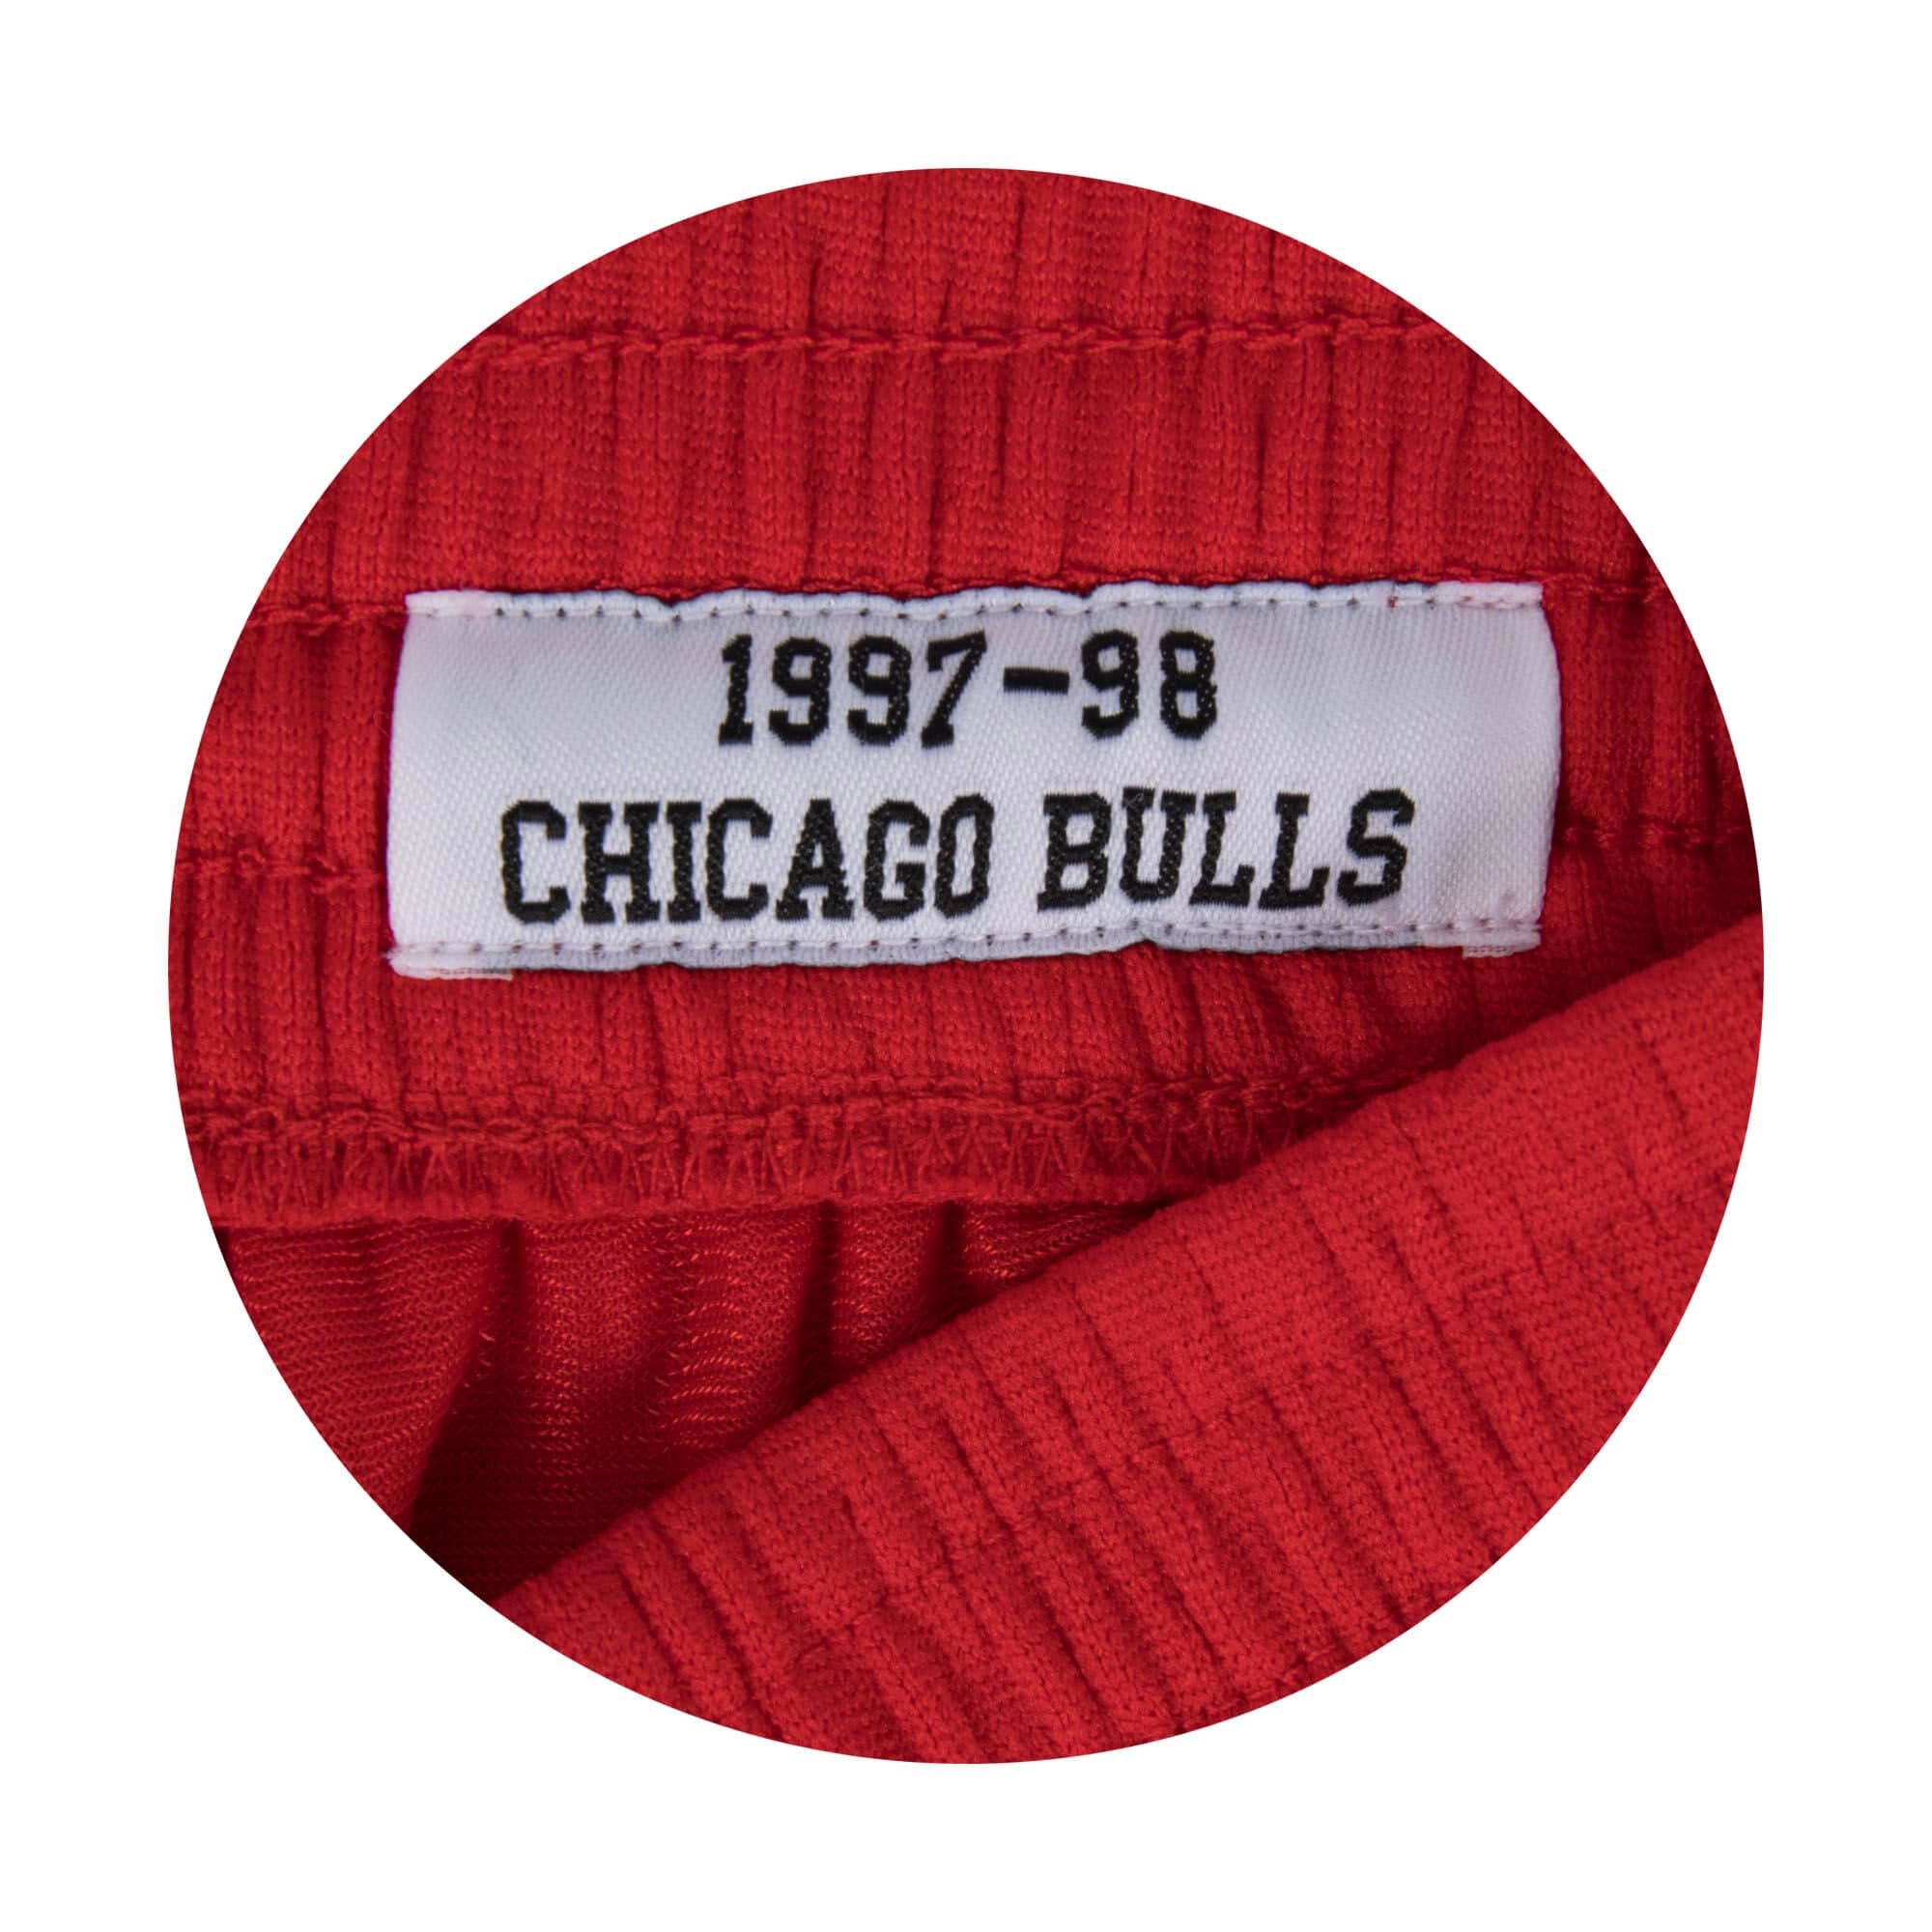 Chicago Bulls 1997-98 Swingman Shorts